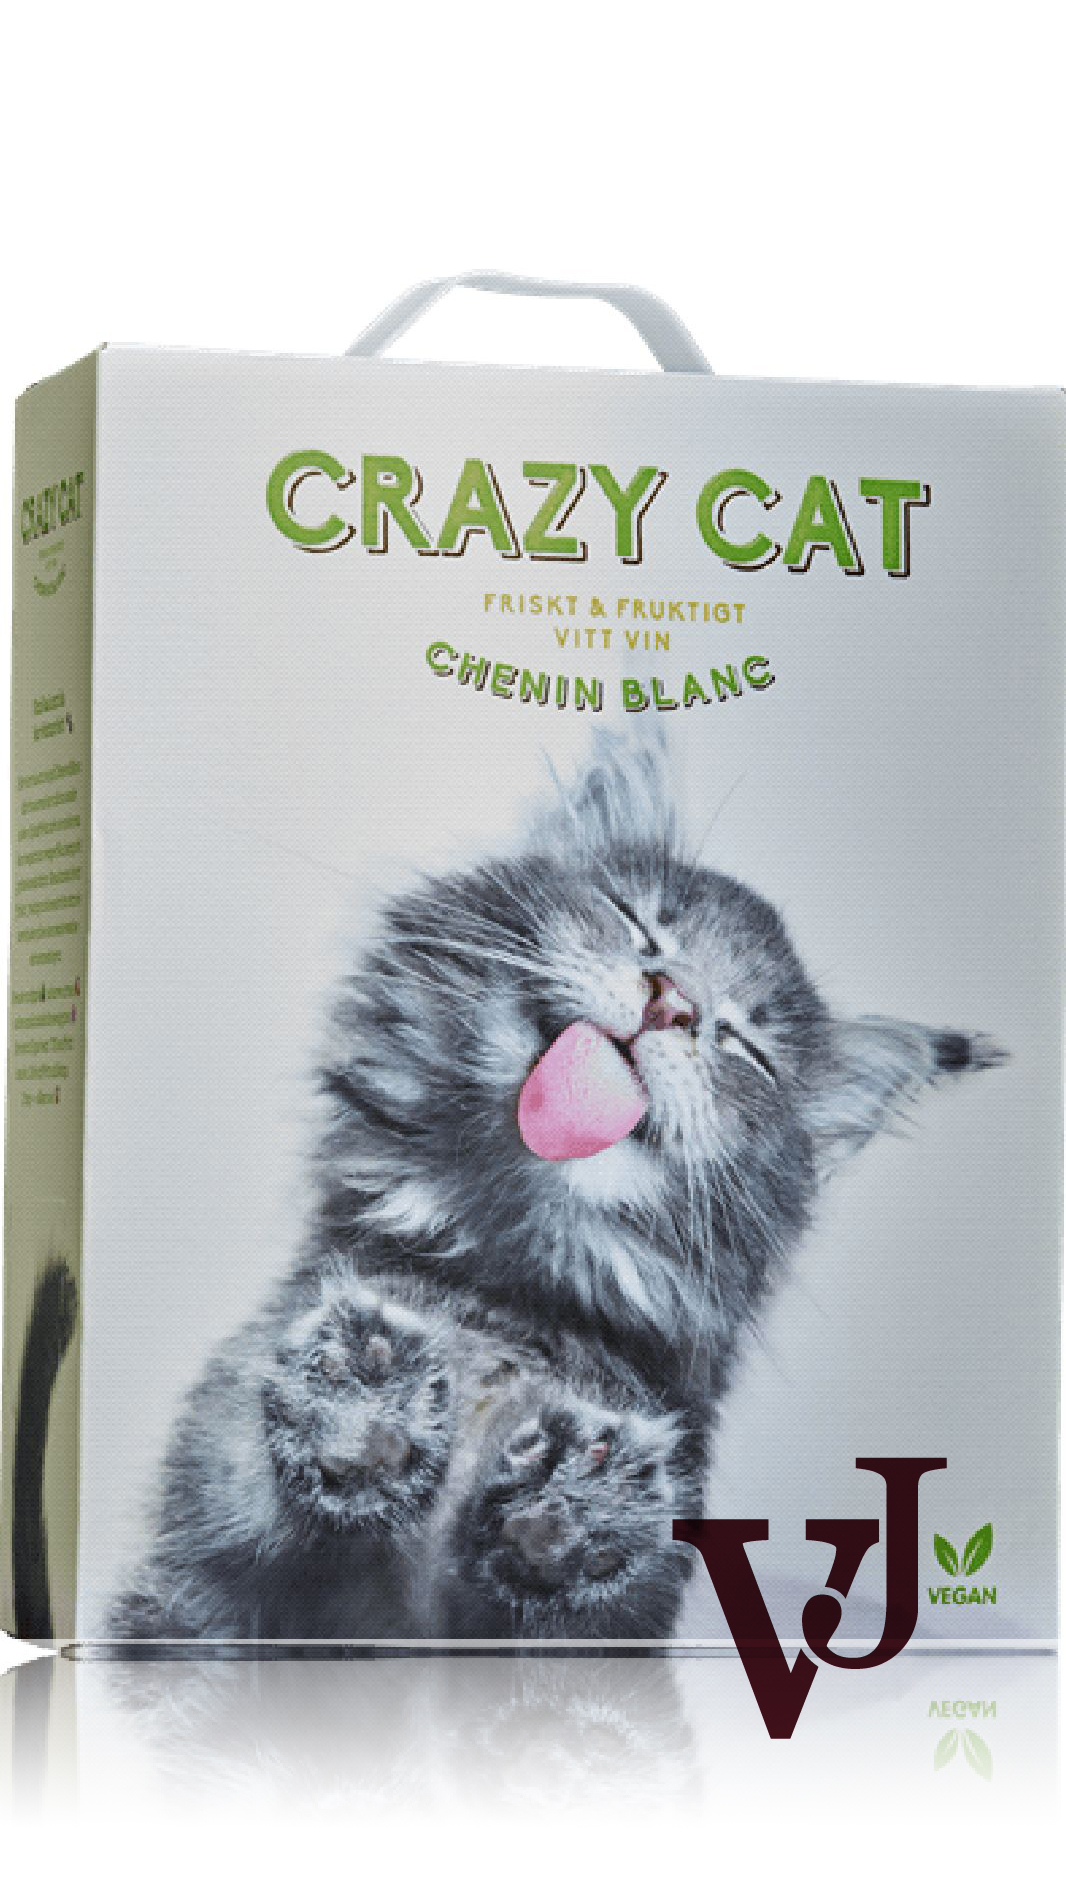 Vitt Vin - Crazy Cat artikel nummer 5617508 från producenten VINMUNDI från området Sydafrika